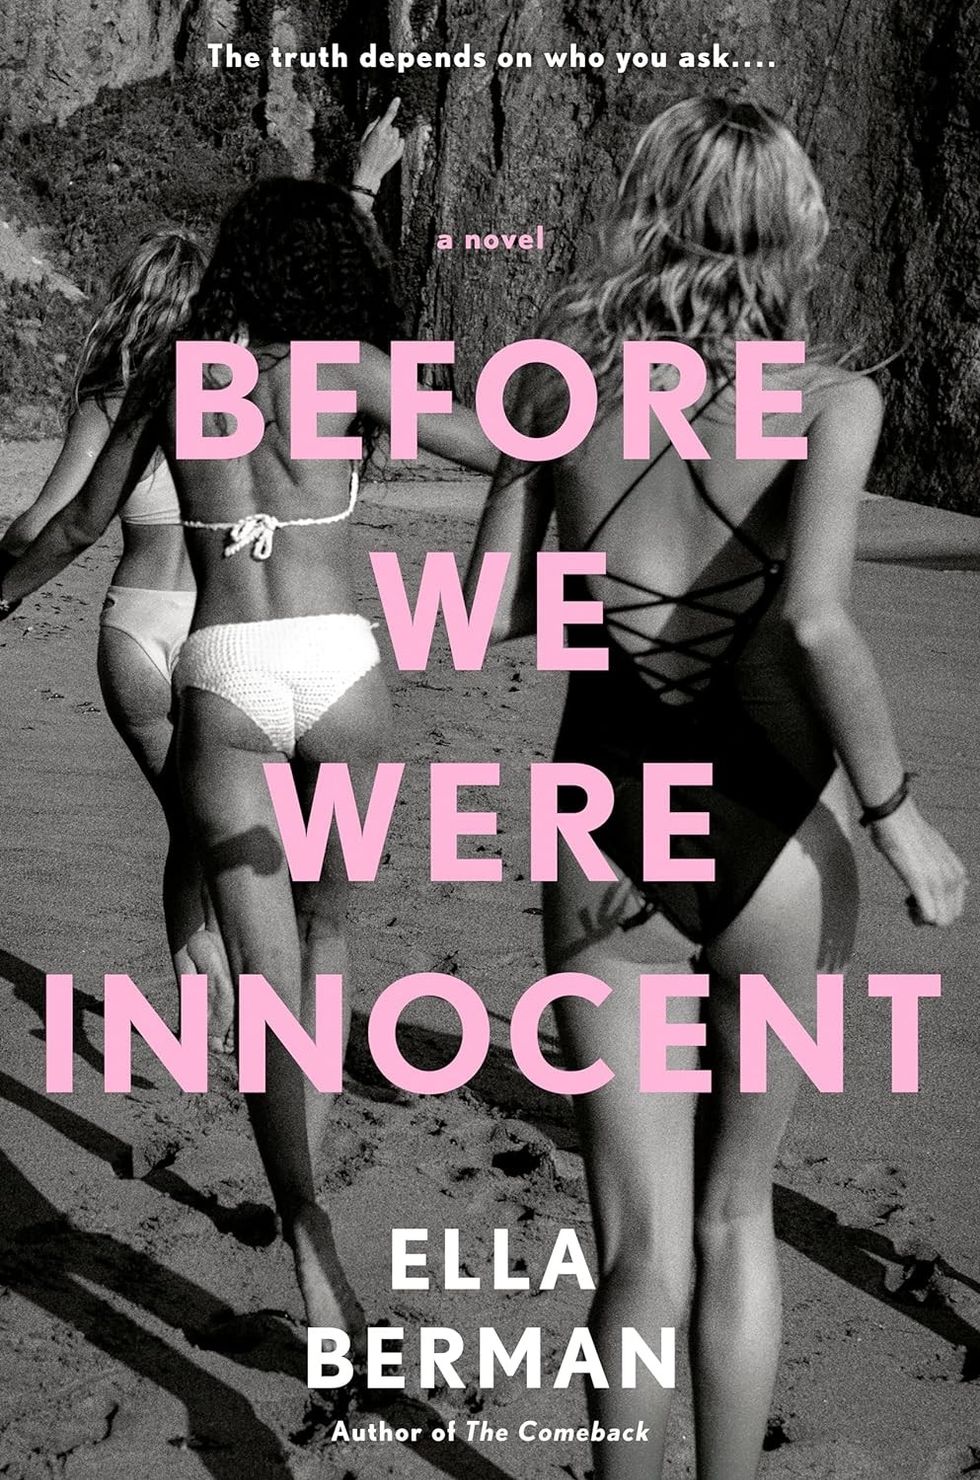 "Before We Were Innocent" by Ella Berman